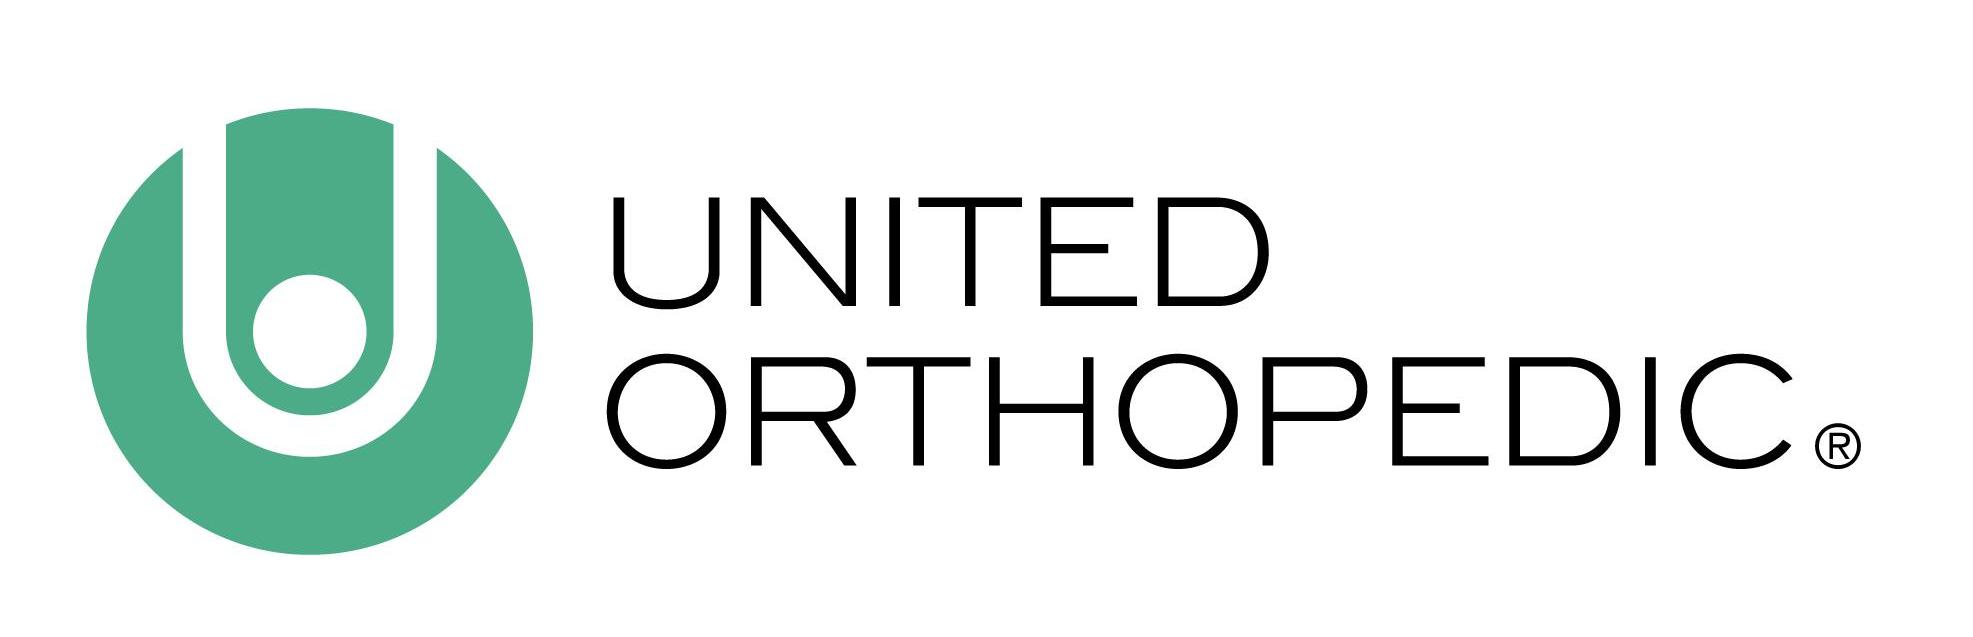 United Orthopedic Corporation-Logo